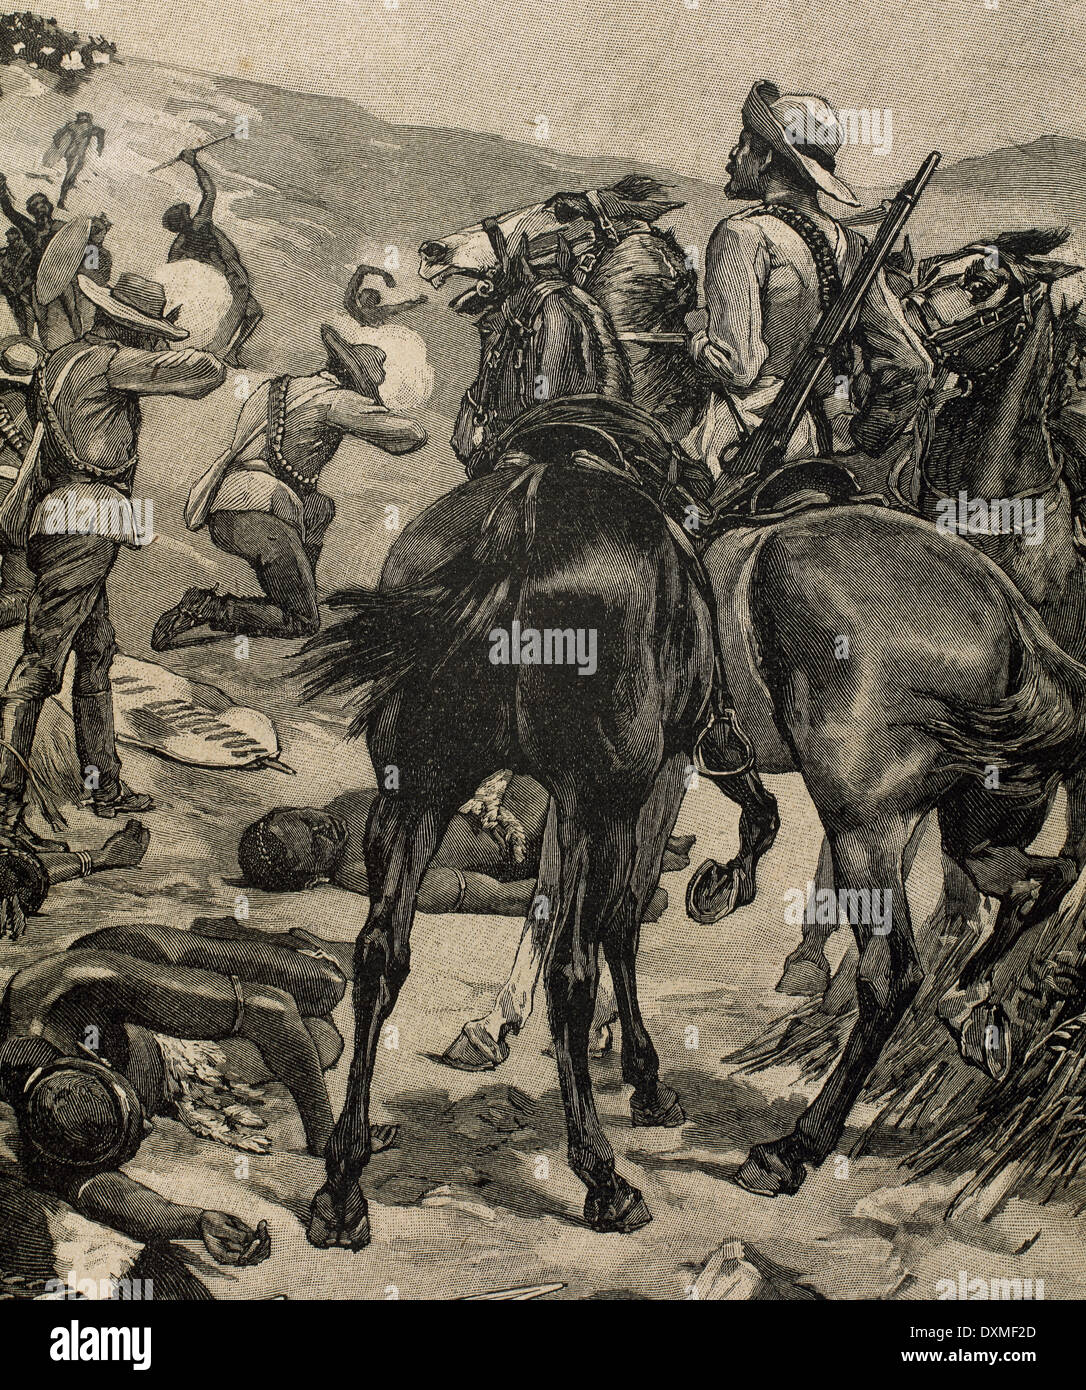 Anglo-Zulu Krieg. Im Jahre 1879 zwischen dem britischen Empire und der Zulu-Reich kämpften. Kupferstich von Marguerite. Stockfoto